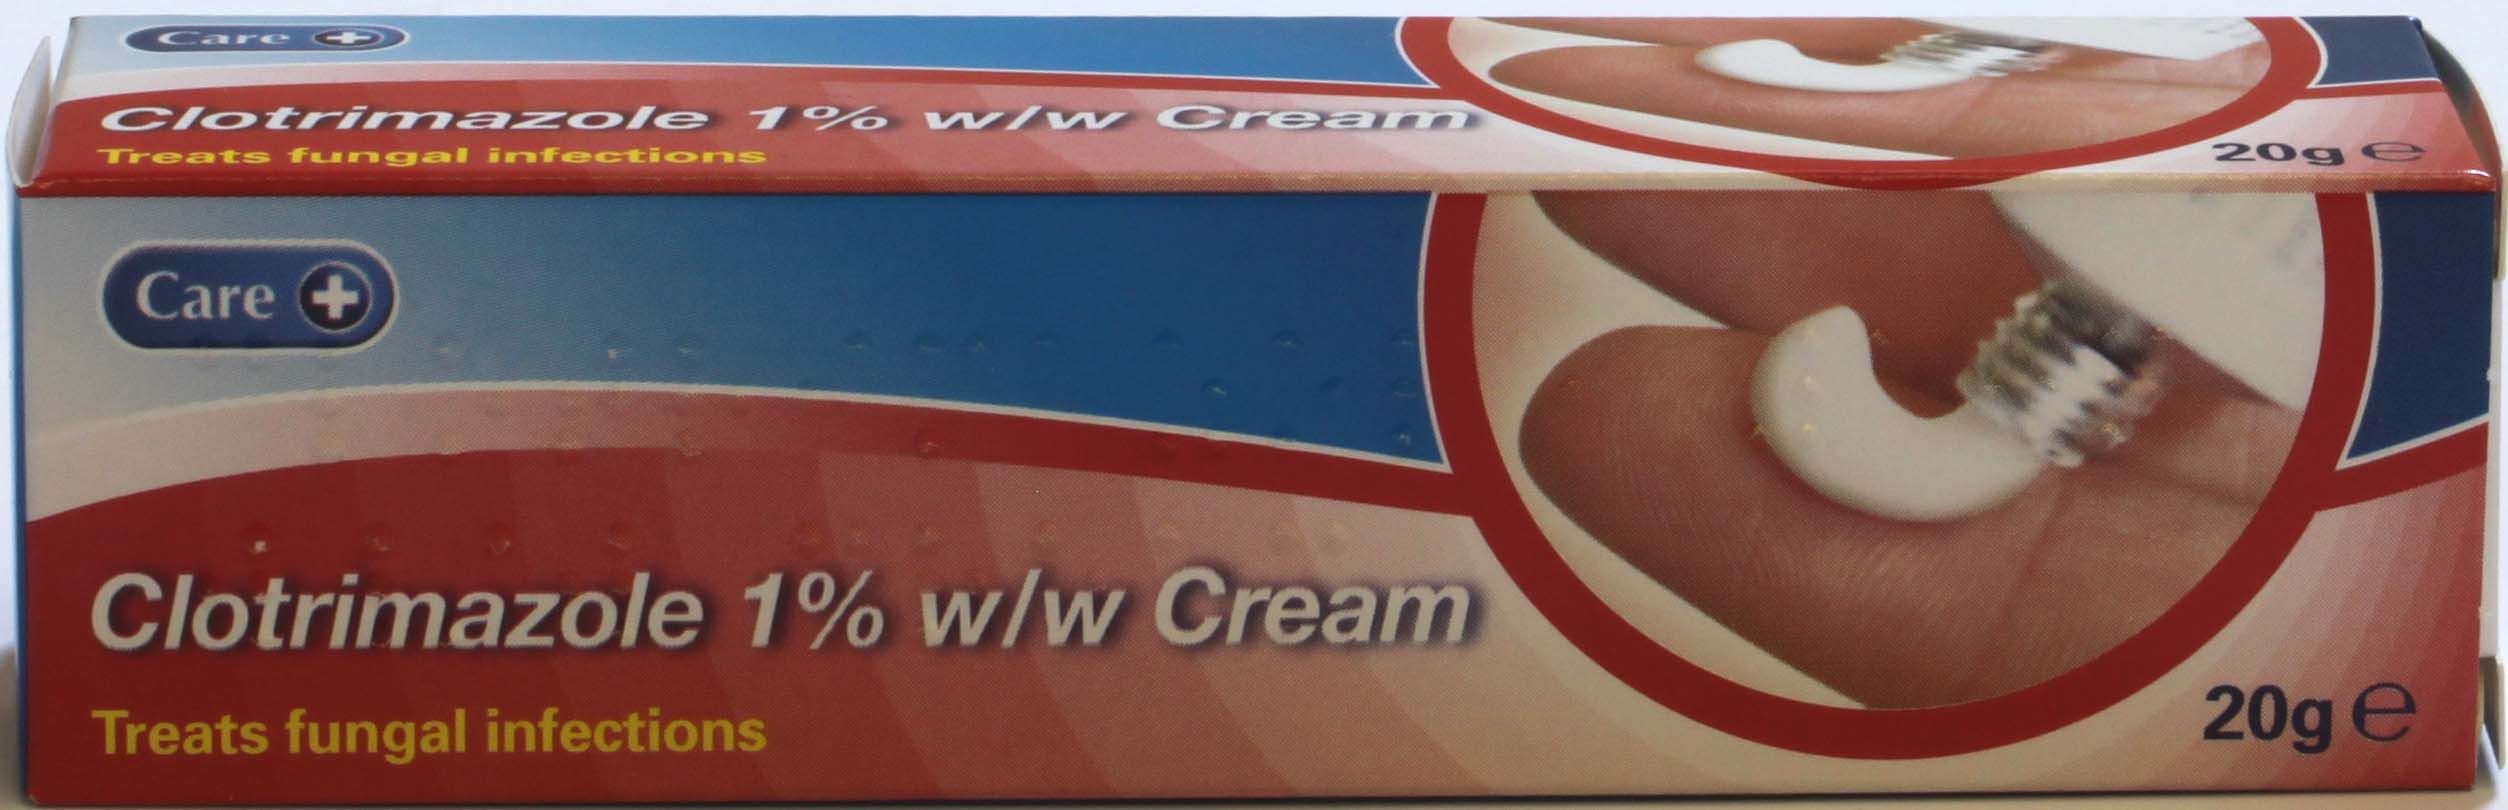 Care Clotrimazole Cream 1% - 20 g